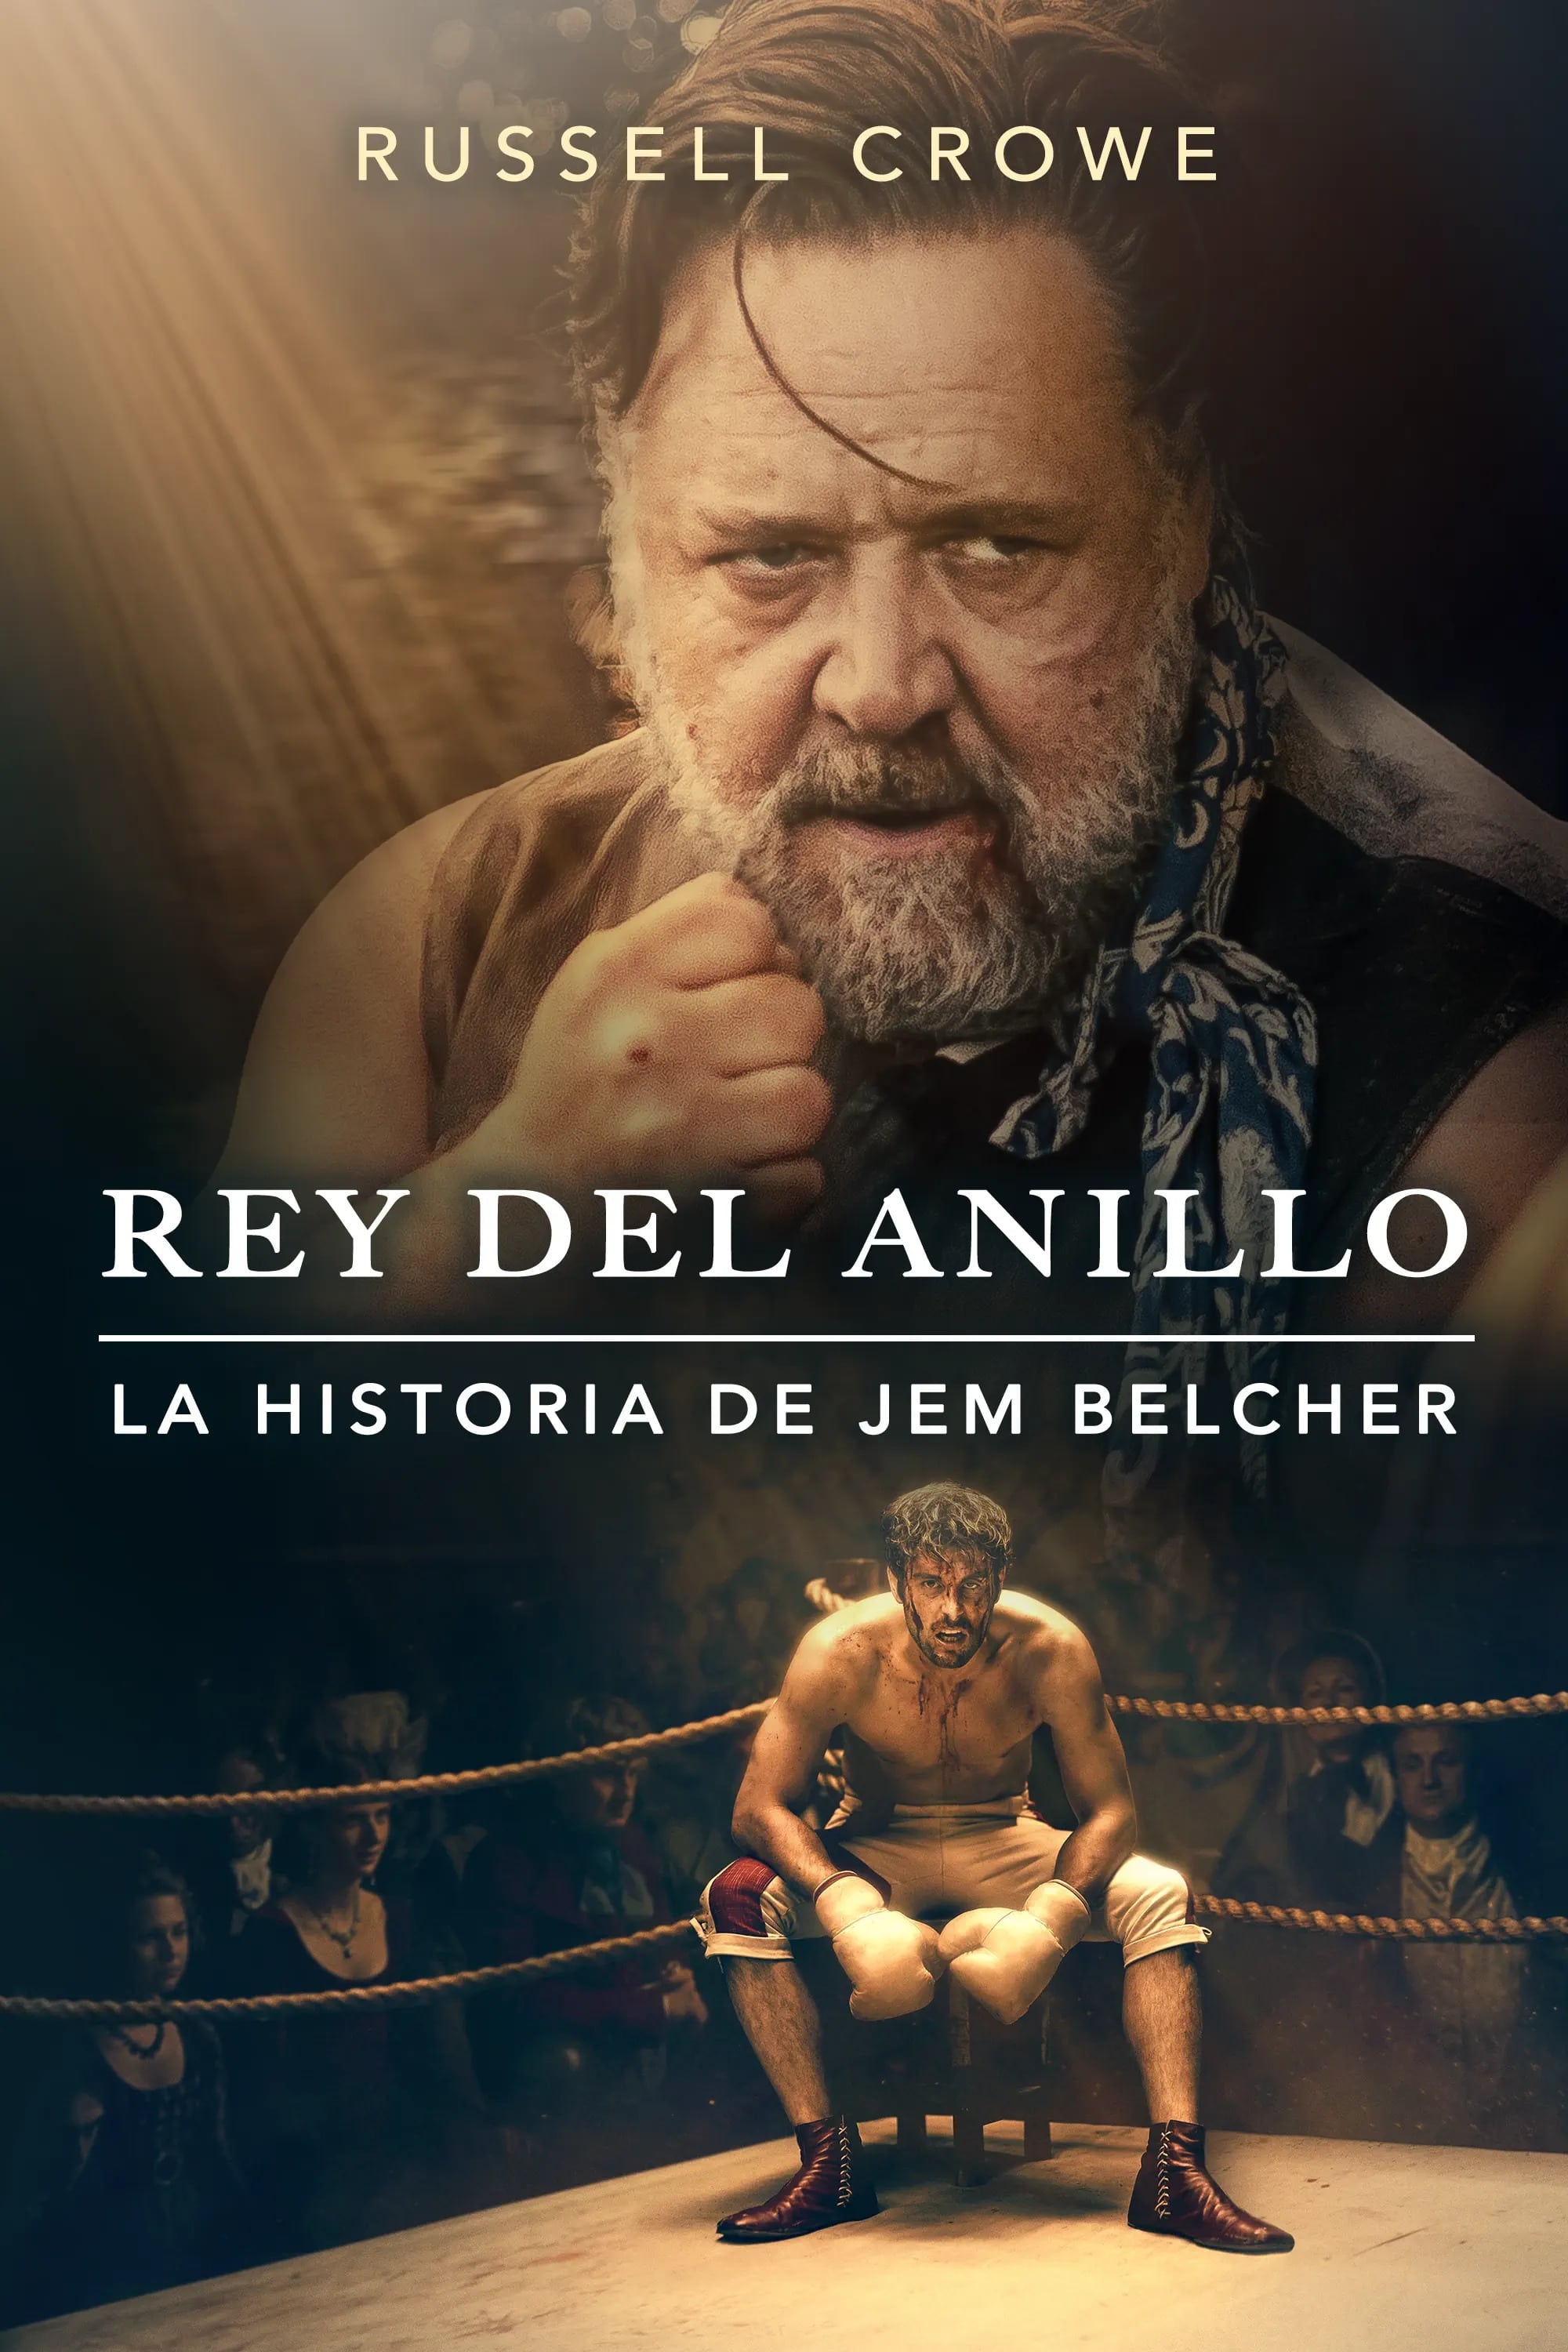 Rey del anillo: La historia de Jem Belcher ()